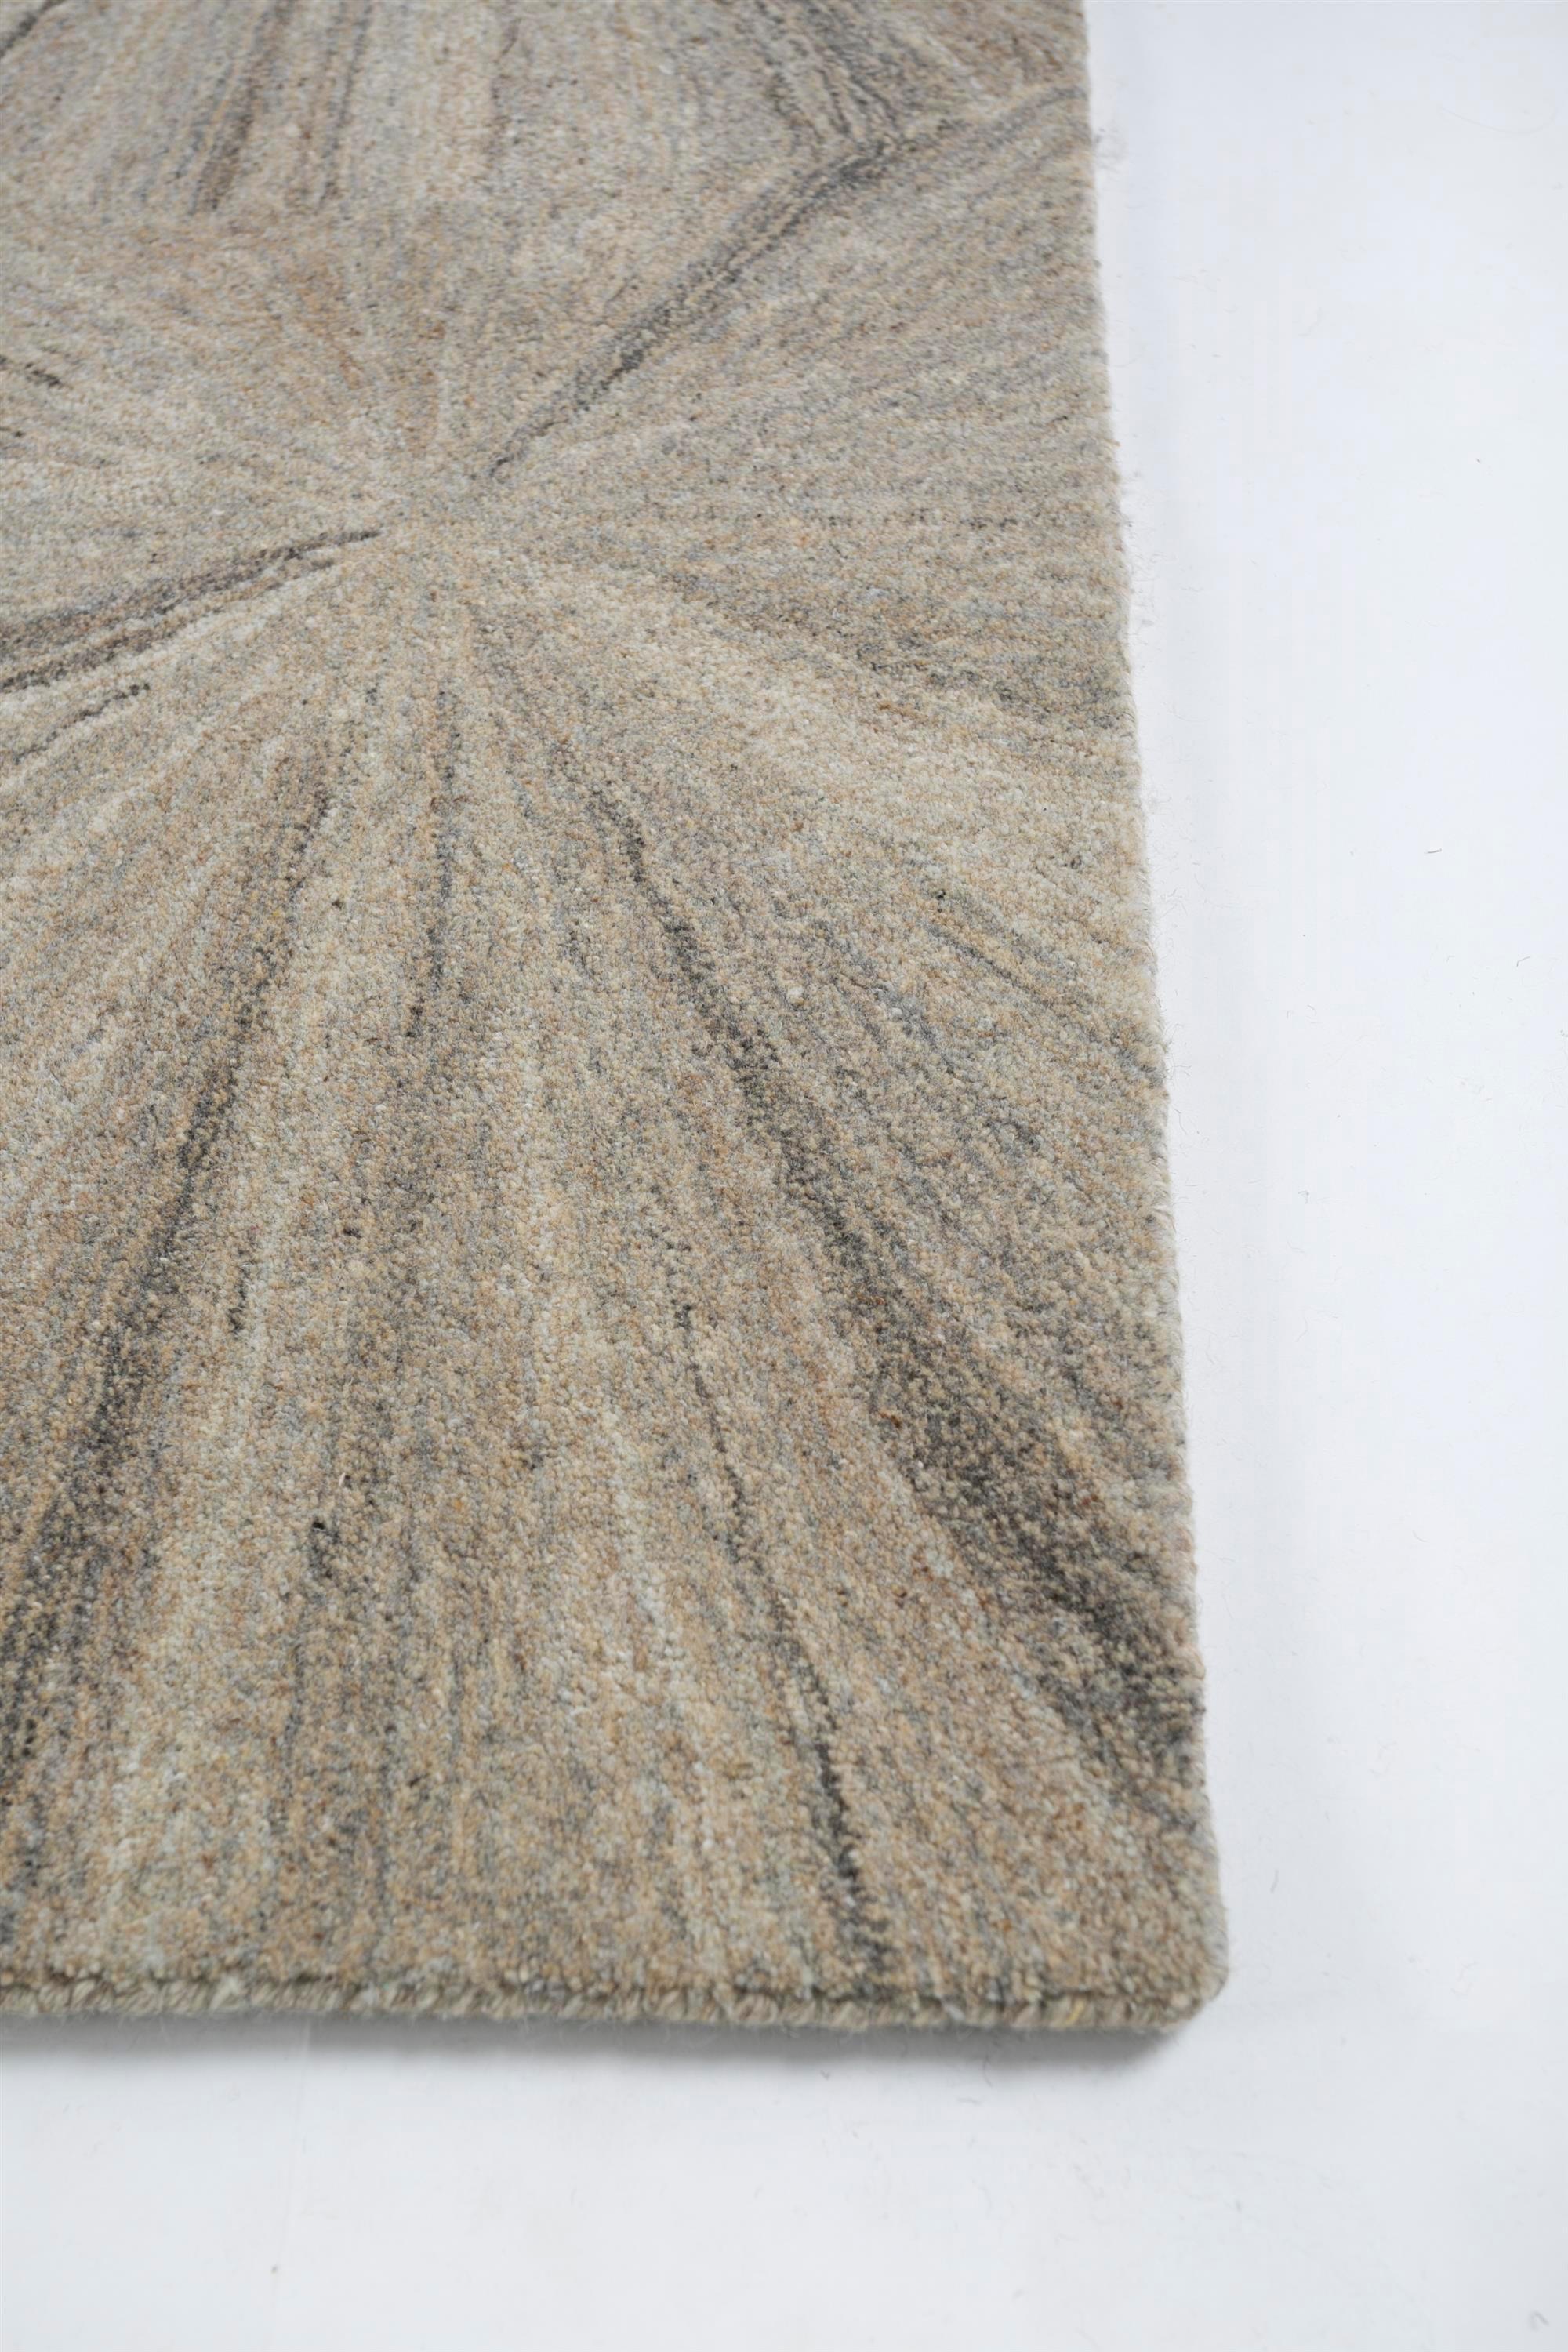 Admirez le charme céleste de ce magnifique tapis de notre collection Pathways. Ce tapis n'est pas seulement une couche confortable sur le sol, c'est aussi un ajout qui apporte la beauté éthérée du ciel nocturne dans votre maison. Les cercles au